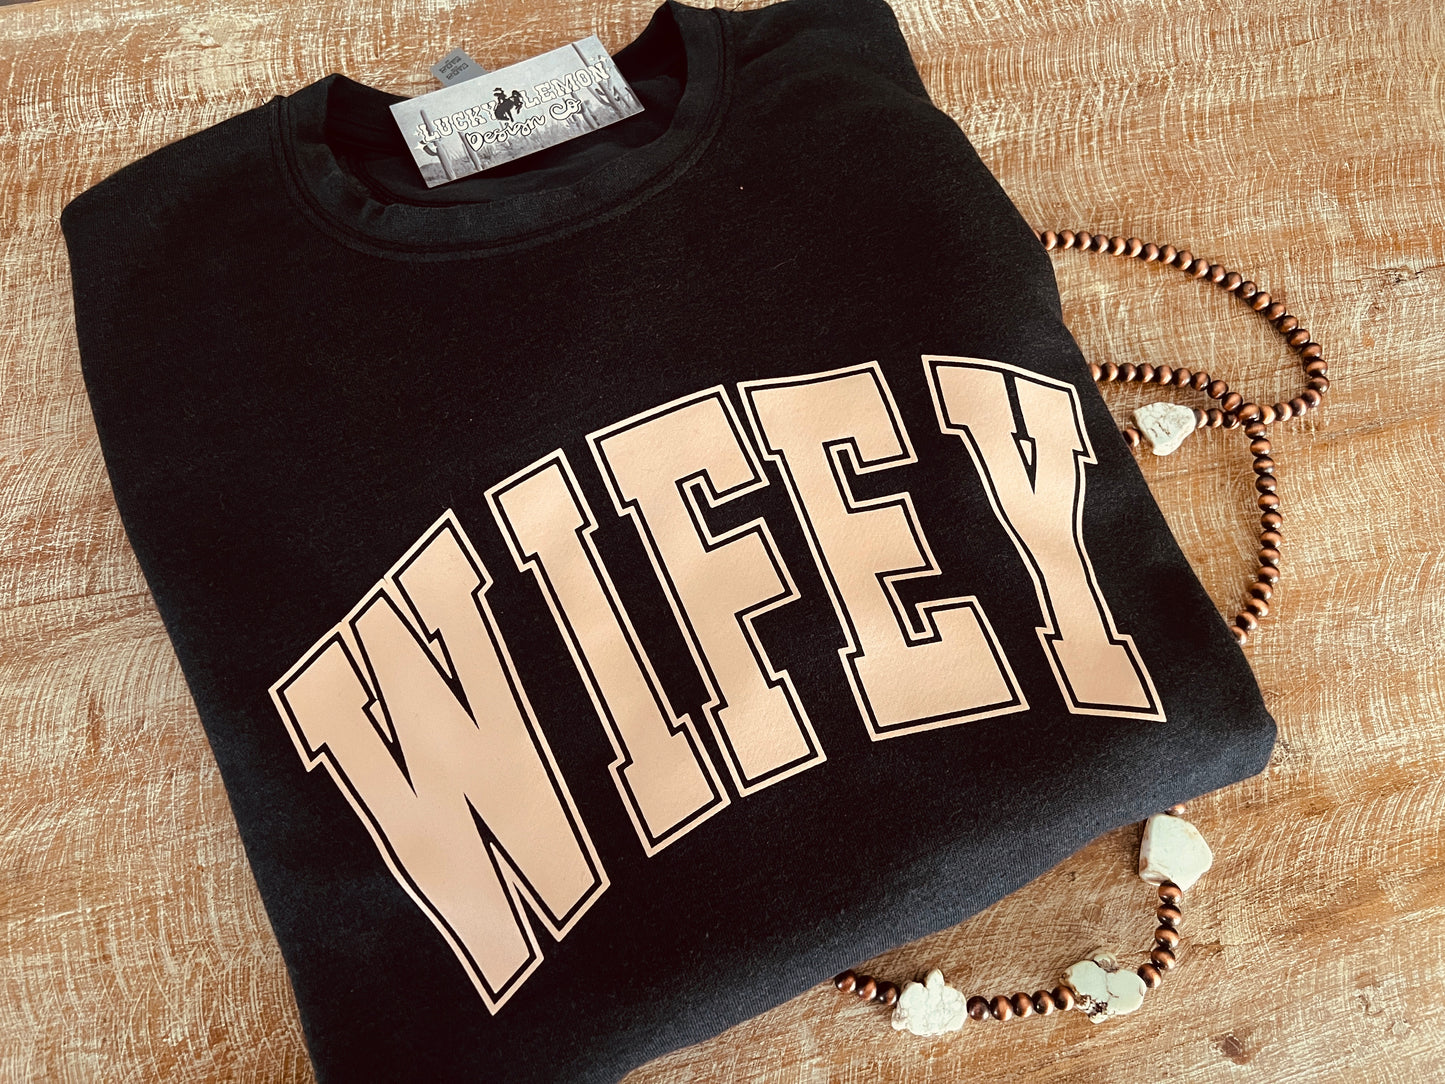 Wifey Tshirt